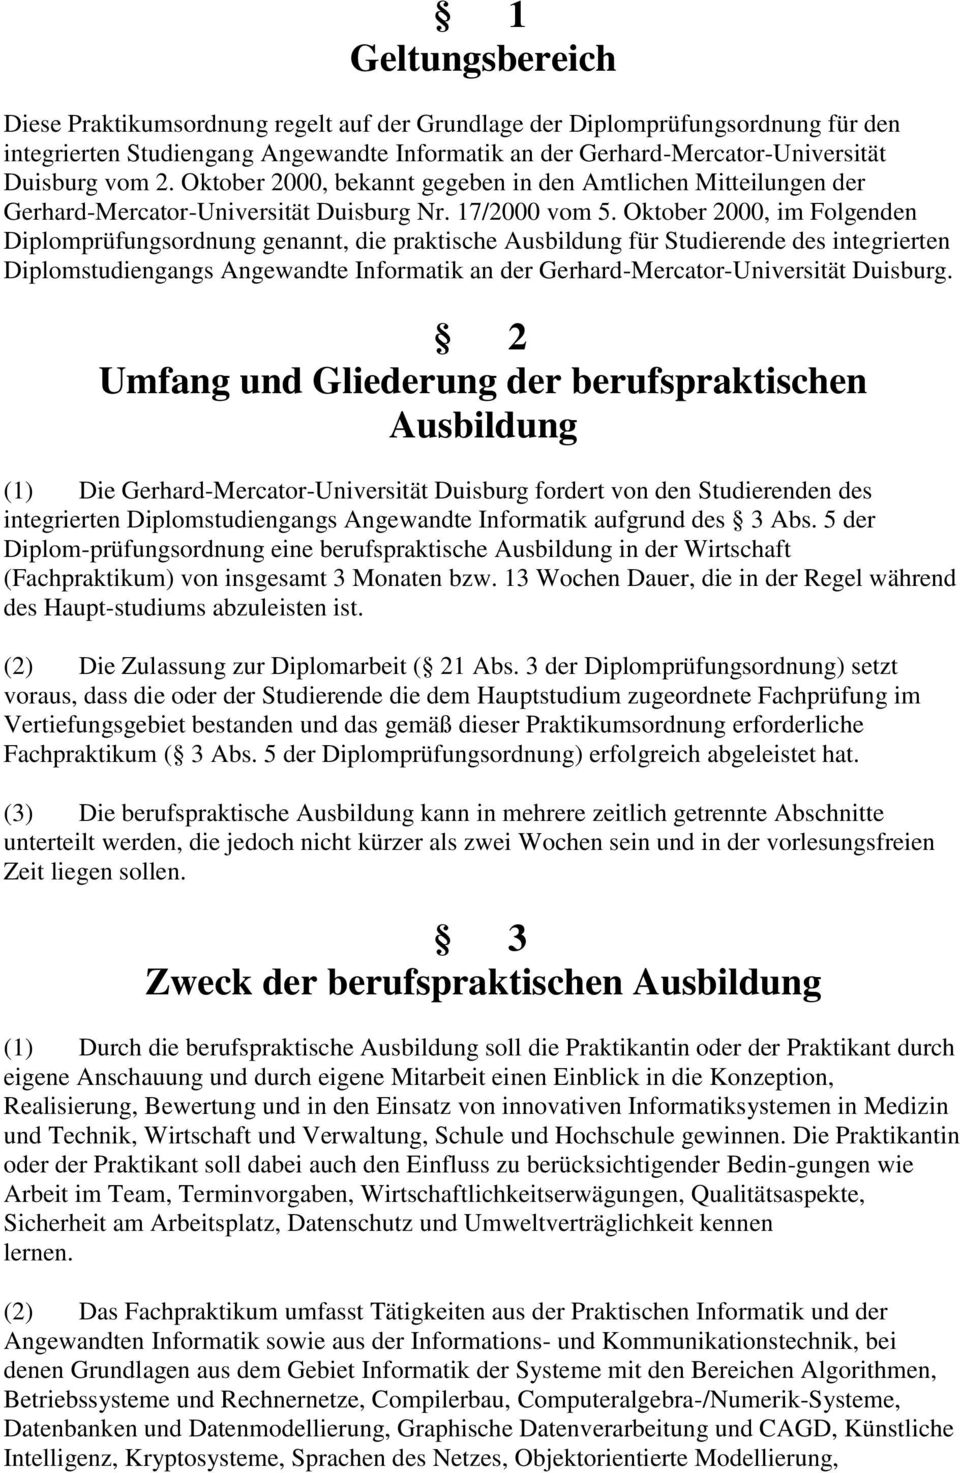 Oktober 2000, im Folgenden Diplomprüfungsordnung genannt, die praktische Ausbildung für Studierende des integrierten Diplomstudiengangs Angewandte Informatik an der Gerhard-Mercator-Universität